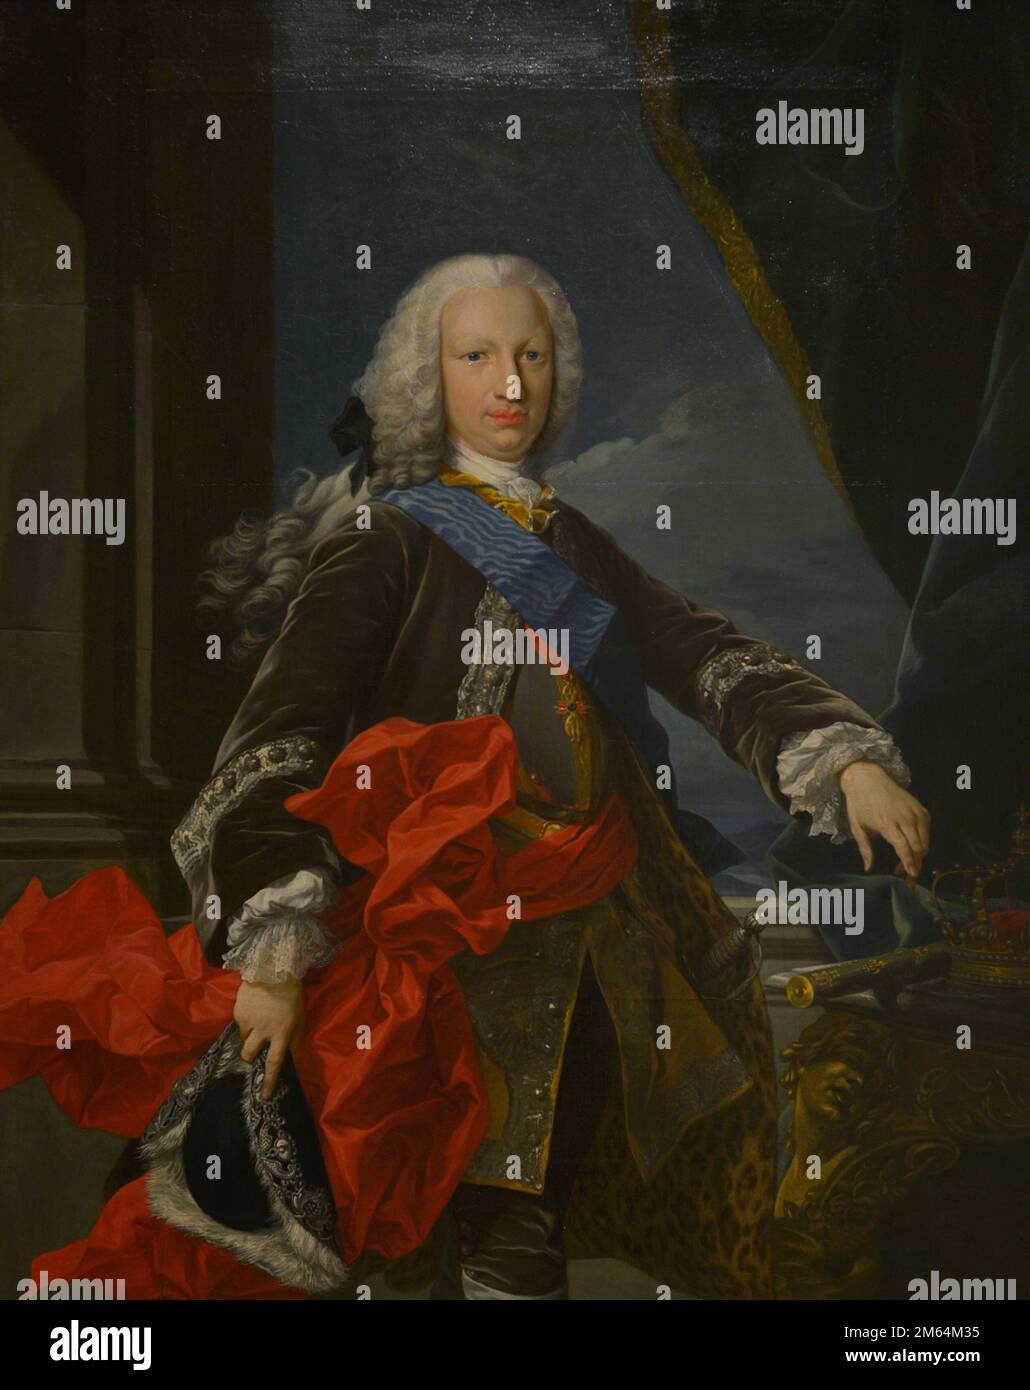 Ferdinand VI (1713-1759). König von Spanien (1746-1759). Bourbon-Dynastie. Porträt. Anonym, c. 1746. Öl auf Segeltuch. Armeemuseum. Toledo, Spanien. Stockfoto